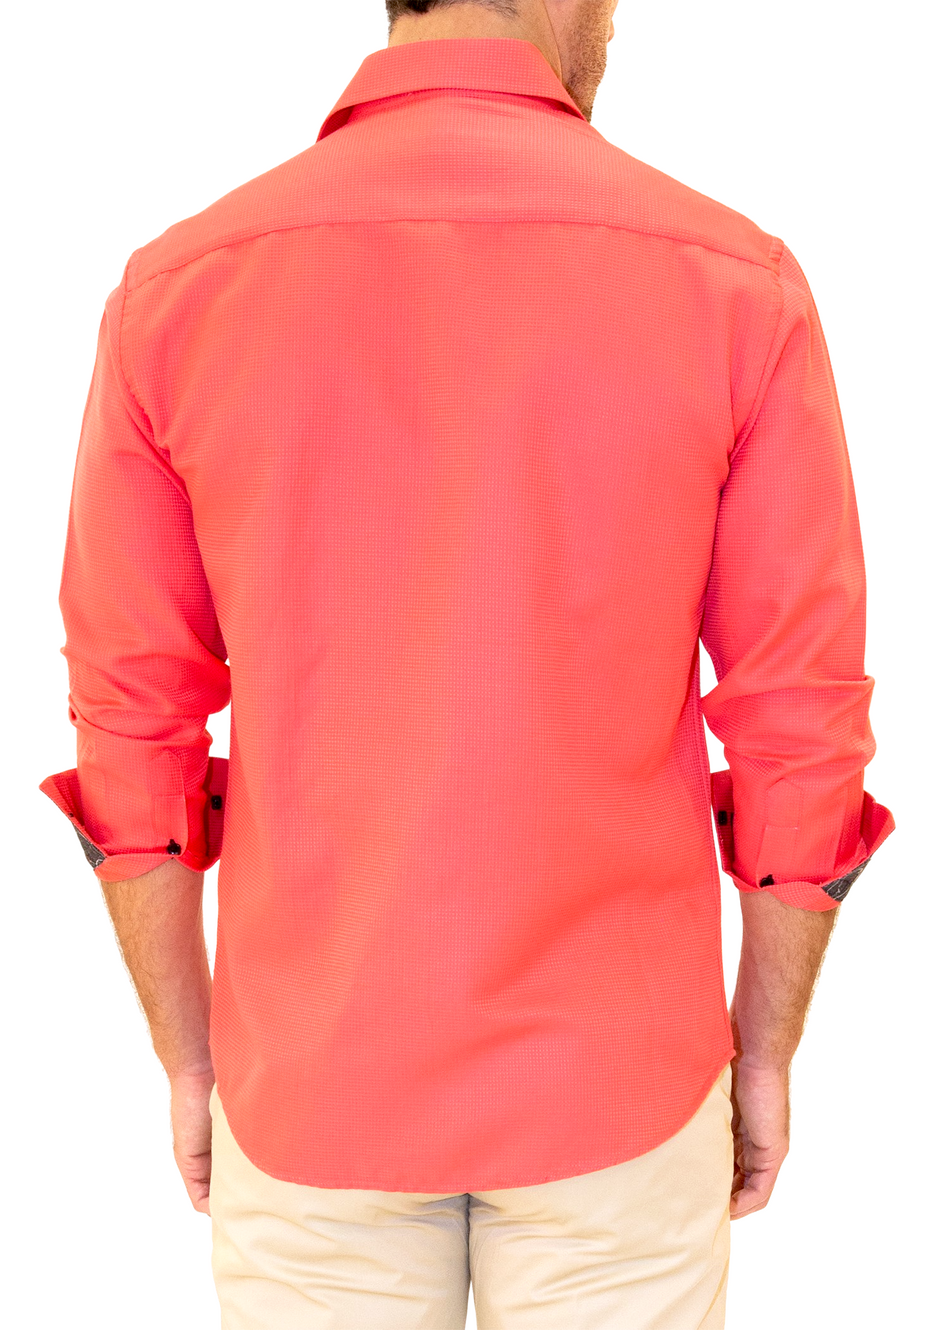 Men's Fuchsia Button Up Long Sleeve Dress Shirt